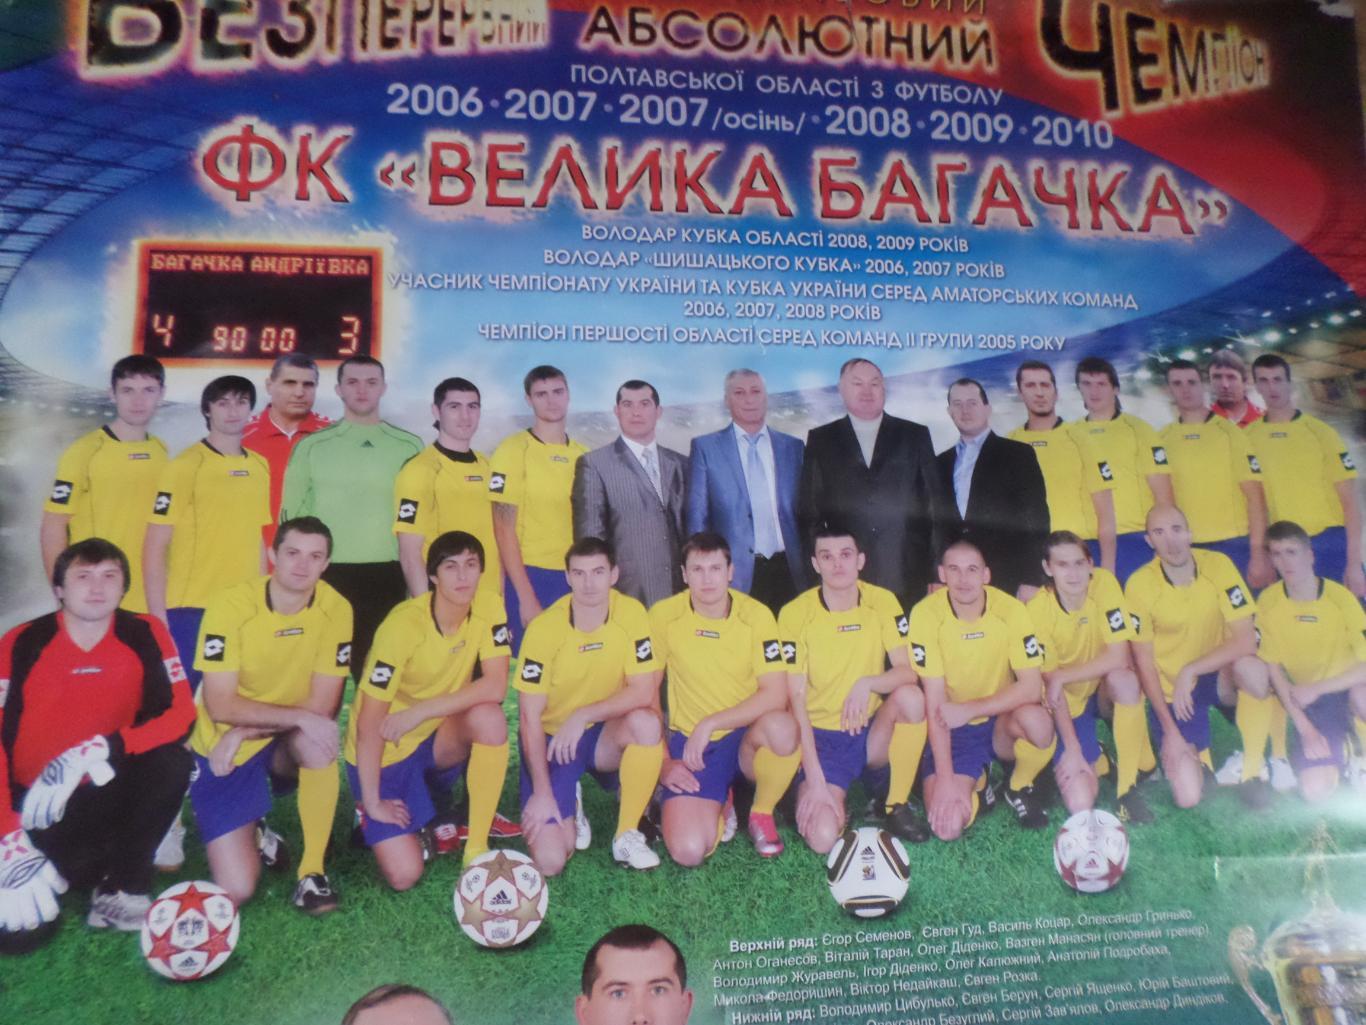 плакат-календарь ФК Великая Багачка Полтавская область 2011-2012 г 1